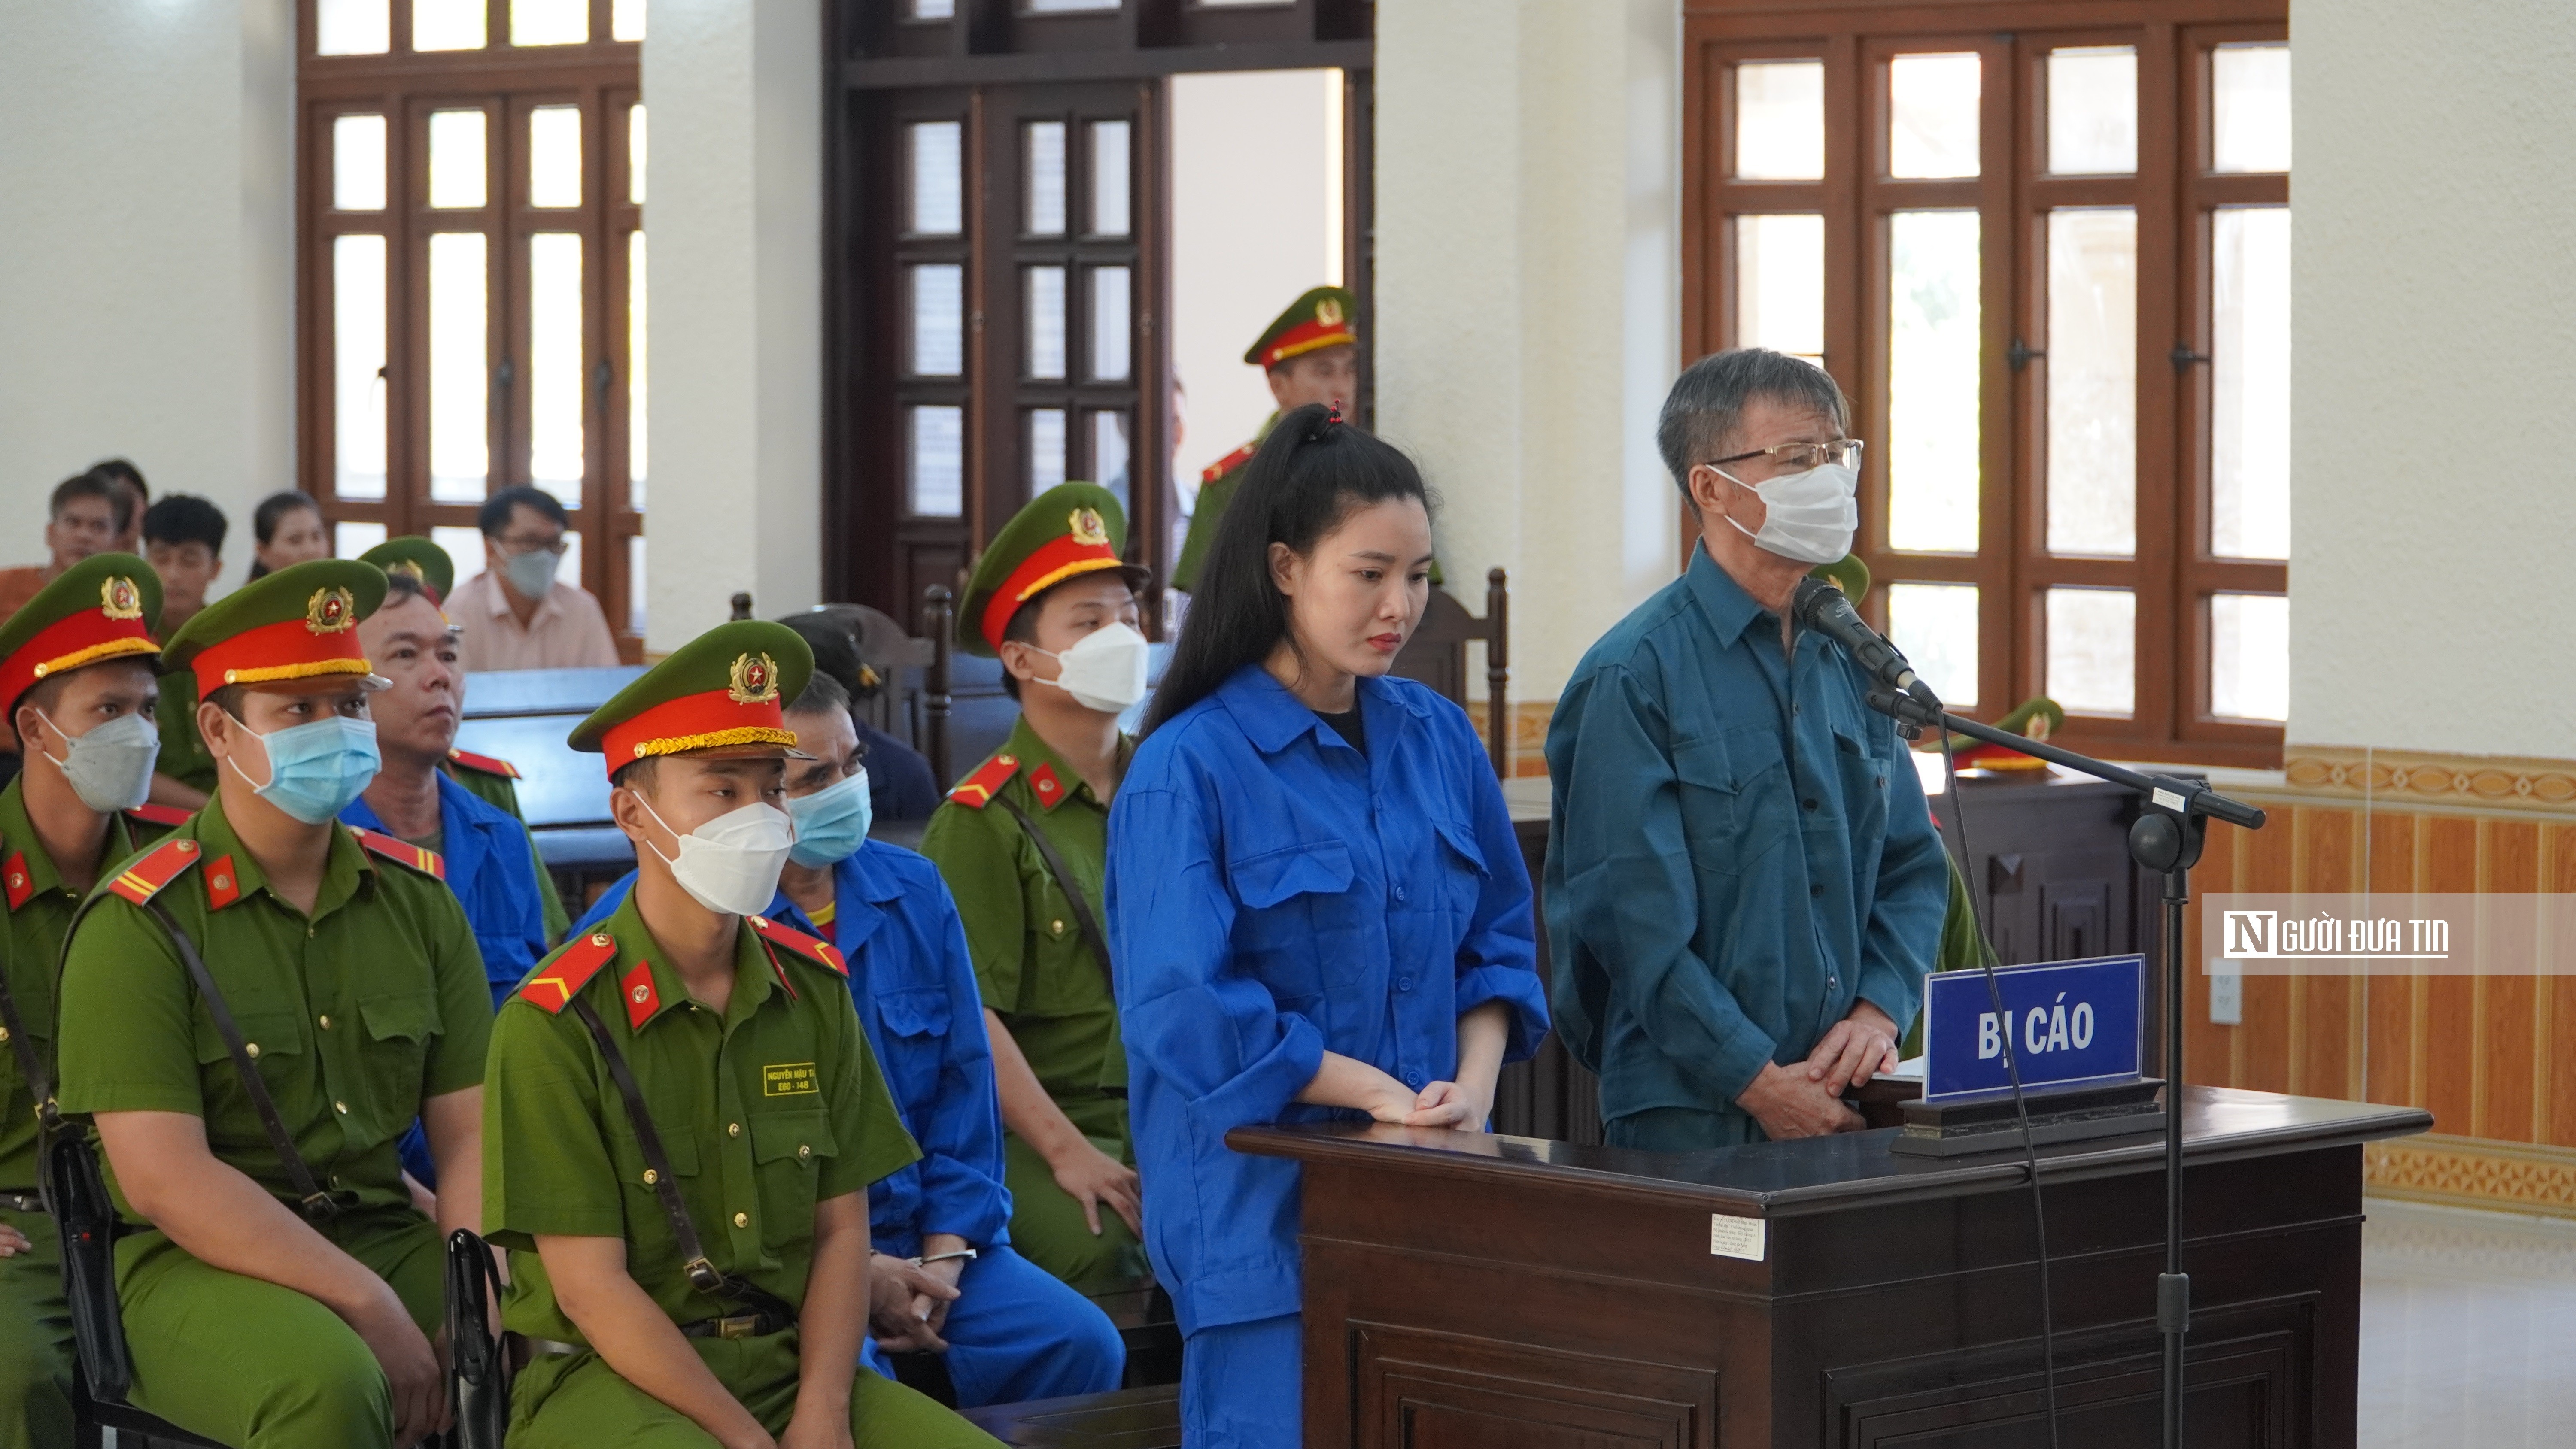 Hồ sơ điều tra - Bình Thuận: Lý do nguyên Trưởng văn phòng công chứng được giảm án  (Hình 2).